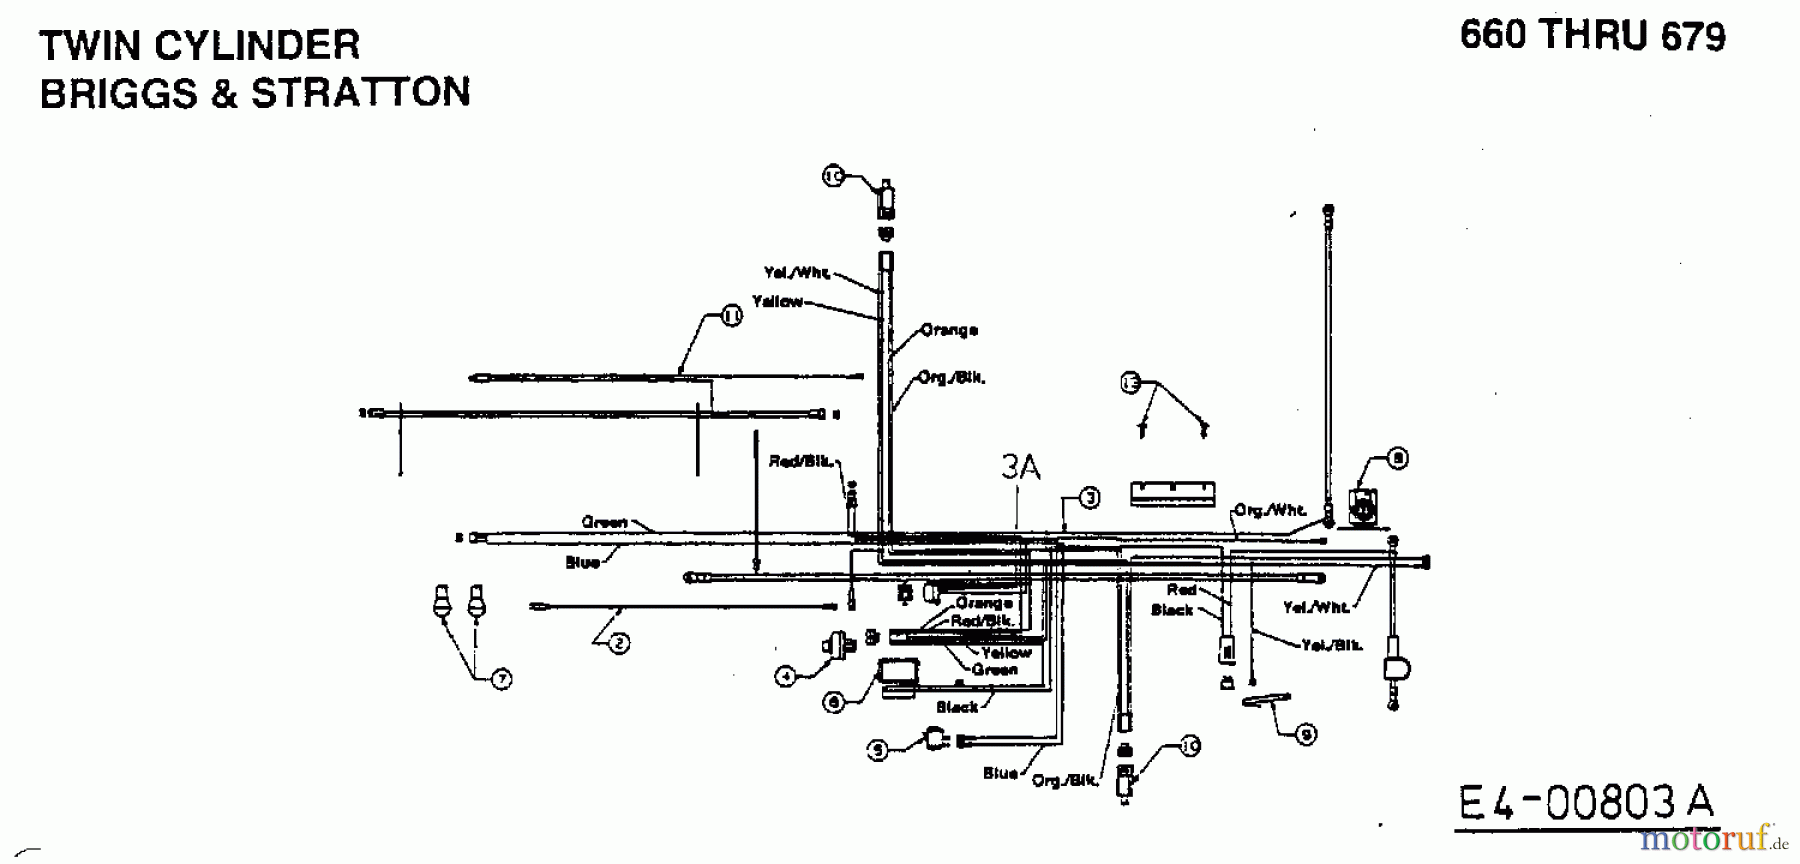  MTD Tracteurs de pelouse H/165 13AO698G678  (1999) Plan électrique 2 cylindre